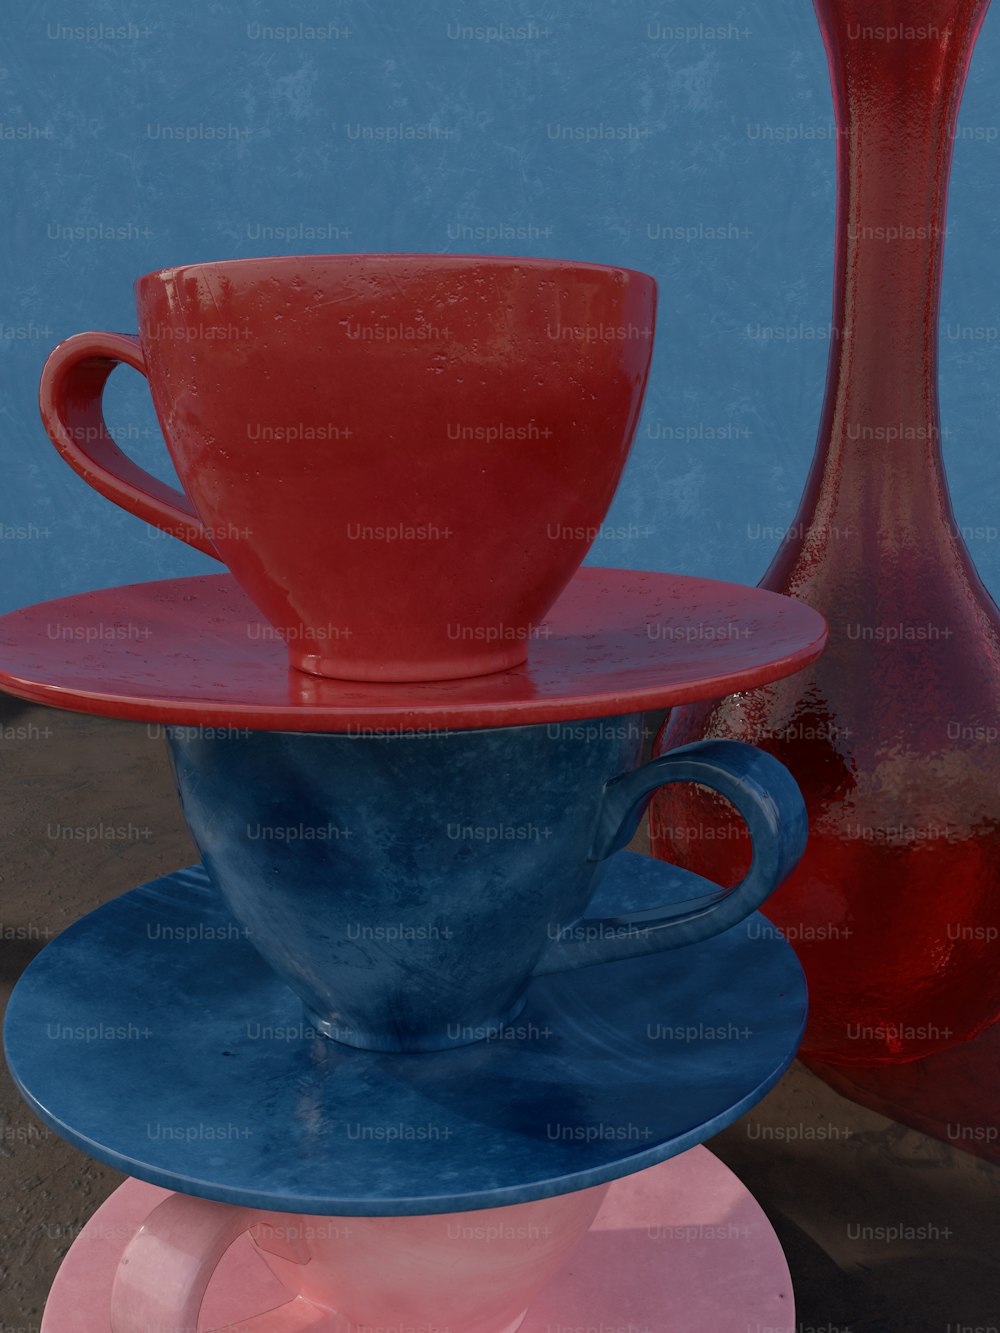 Trois tasses et soucoupes de couleurs différentes sur une table